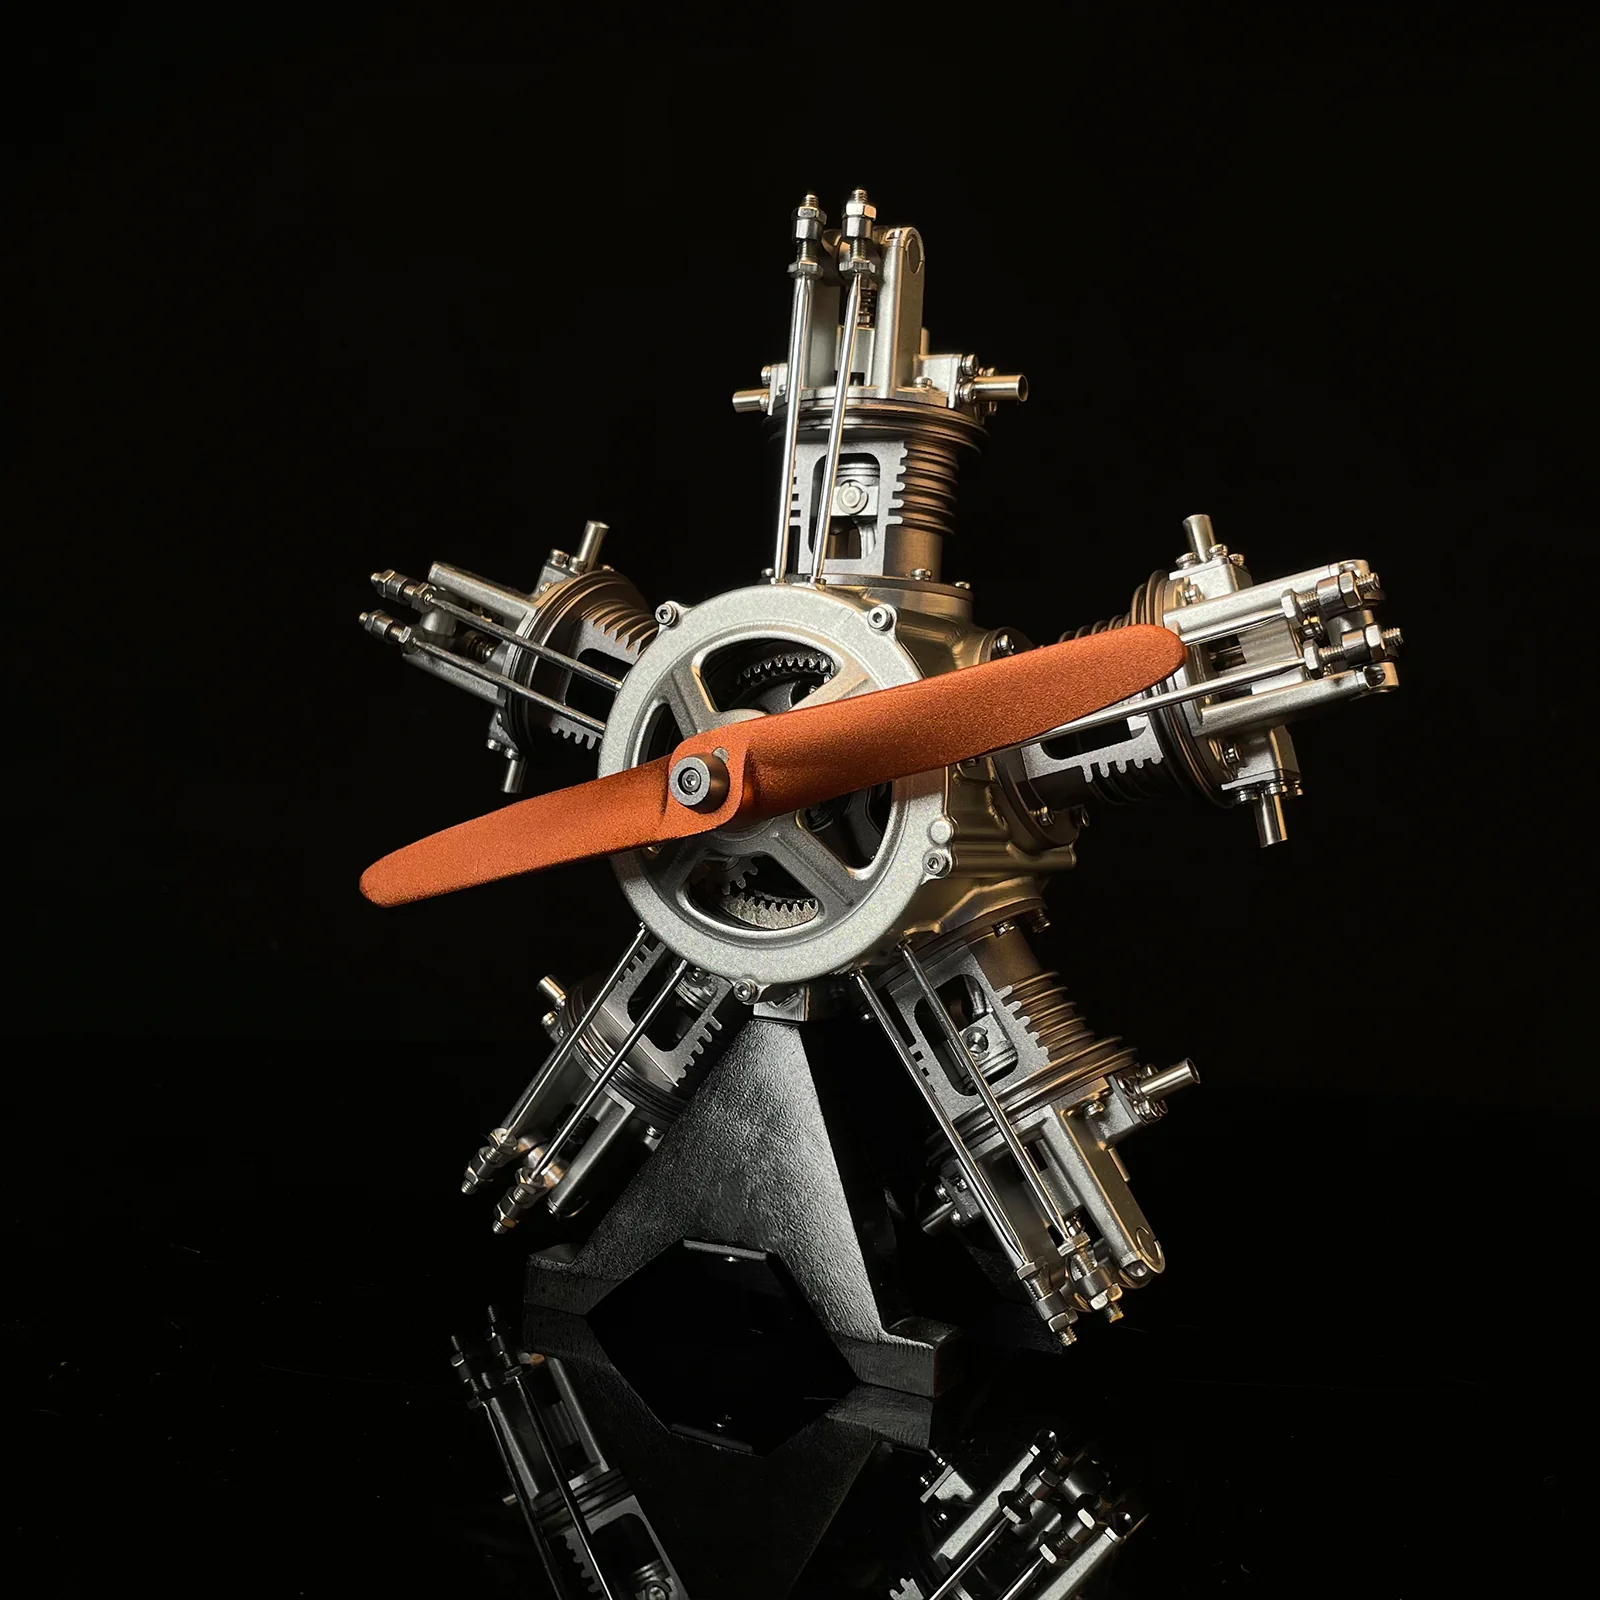 Moteur radial d'avion 5 cylindres complet en kit - Maquette technique motorisée de 230 pièces